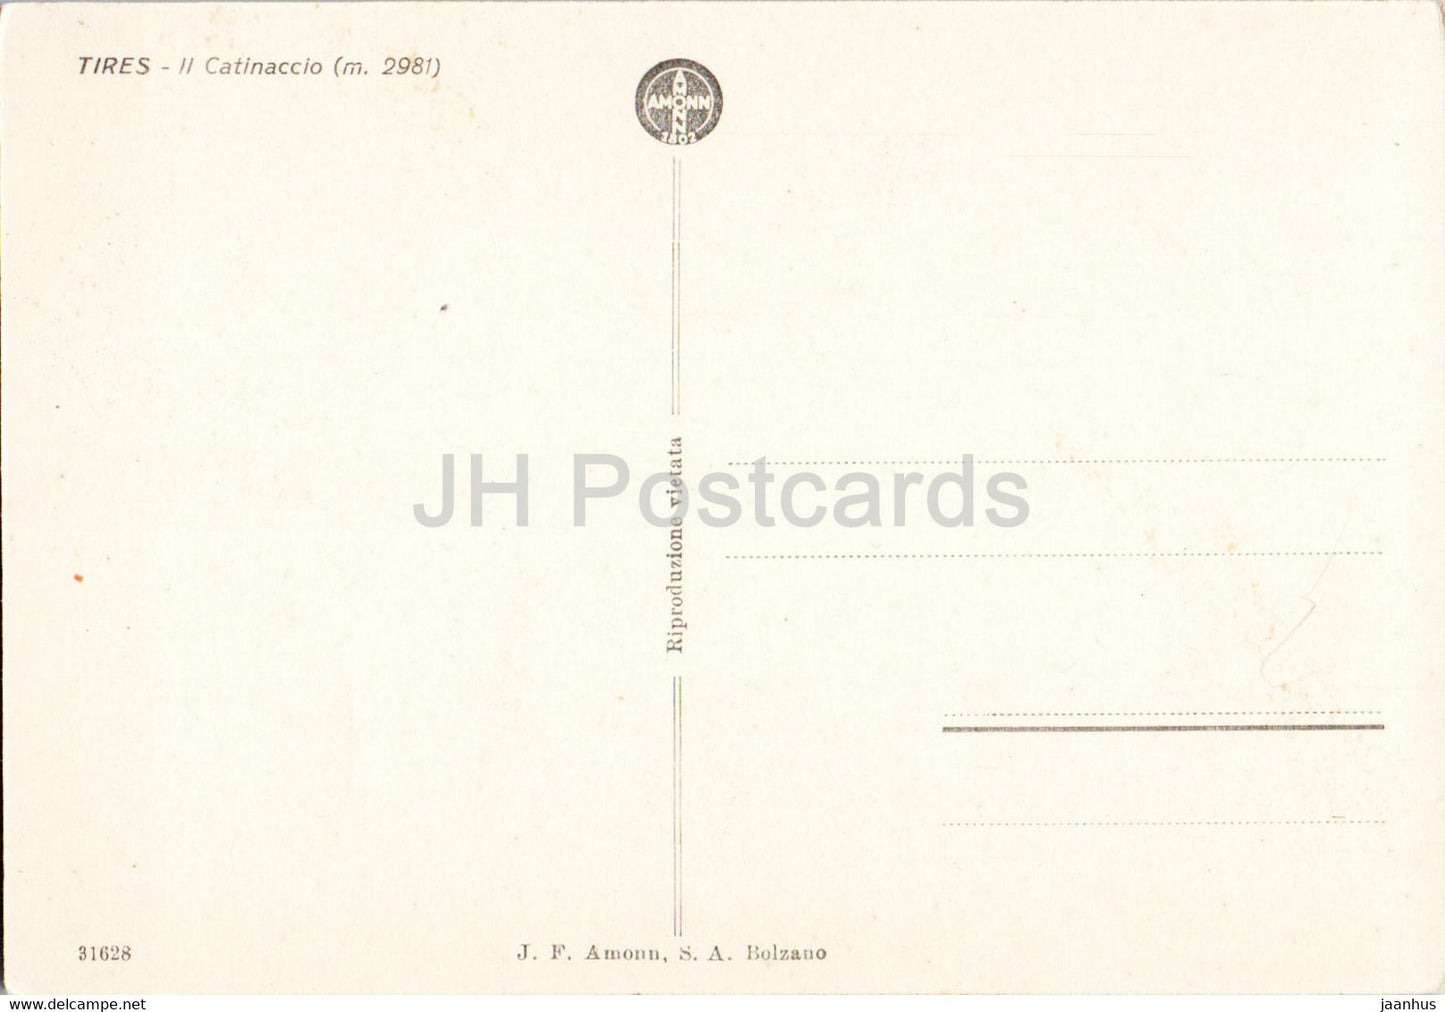 Pneus - Il Catinaccio 2981 m - carte postale ancienne - Italie - inutilisé